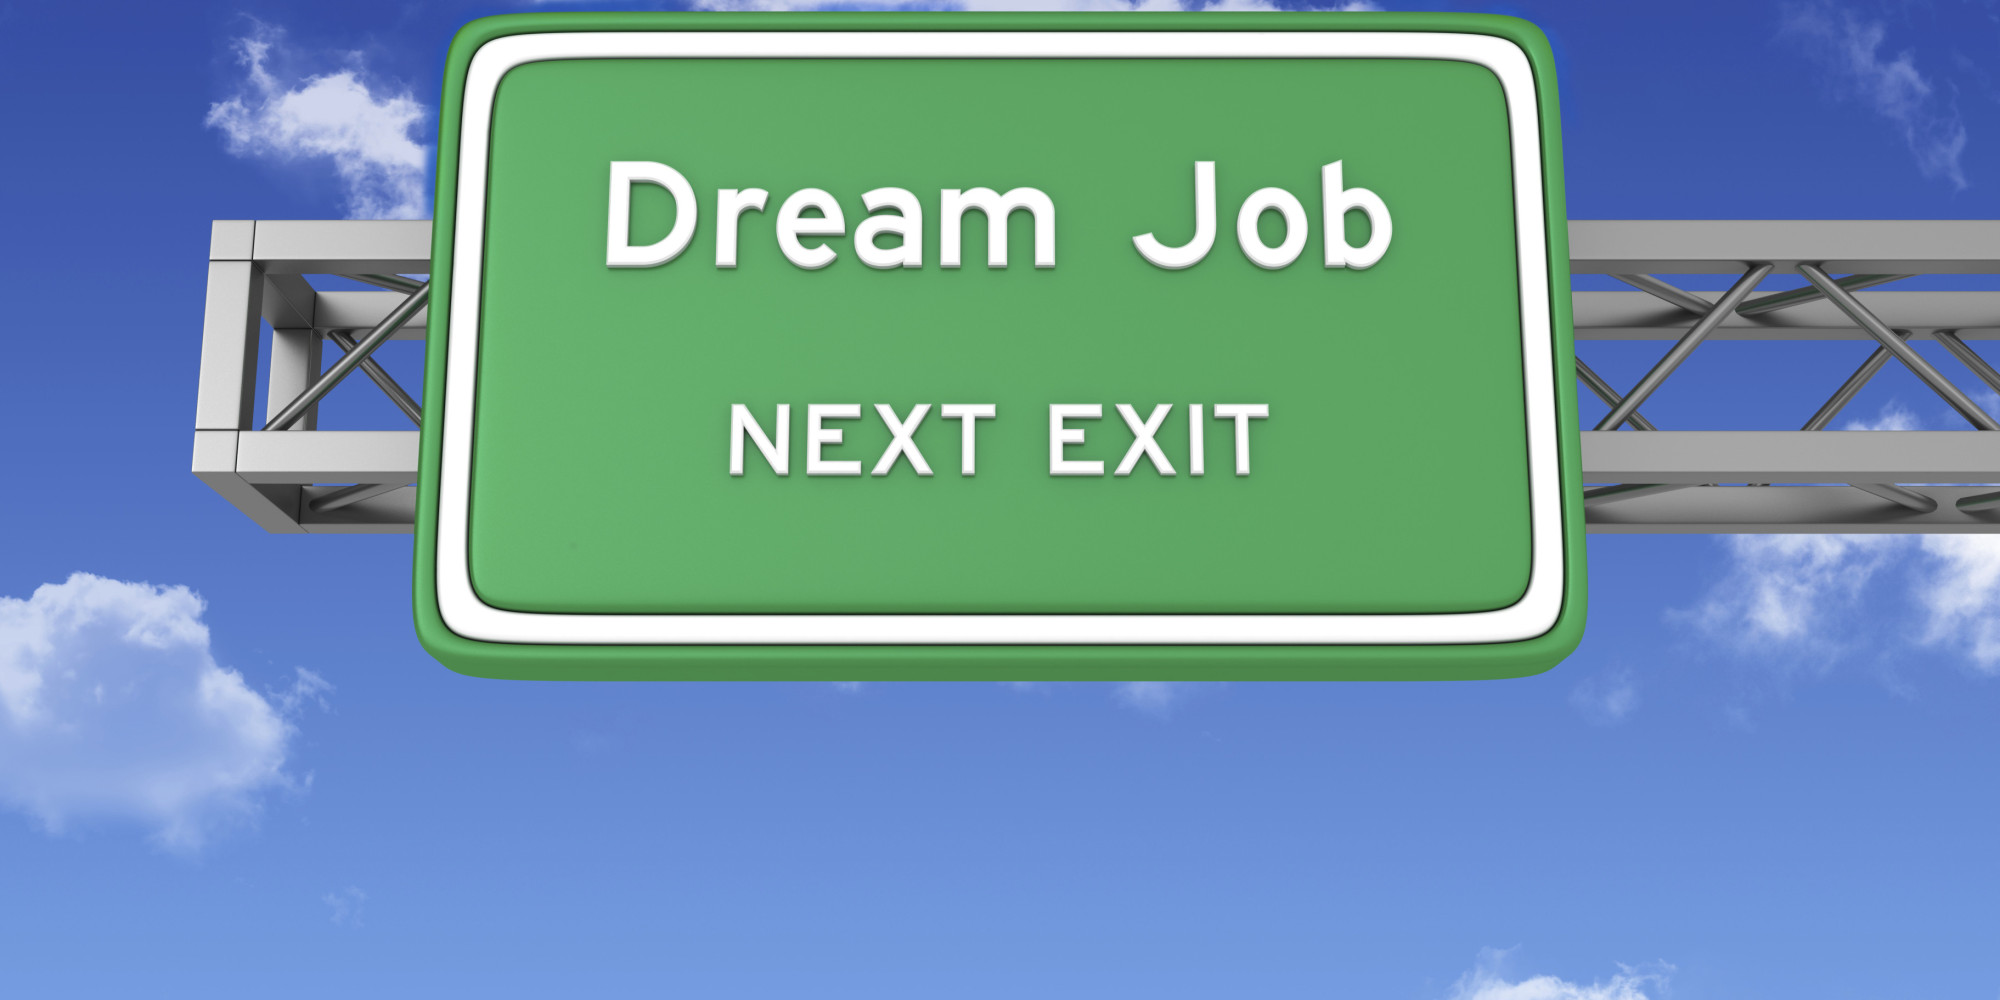 o-dream-job-facebook-dc0f464c9acfdf8cba4e513297ac4eba.jpg